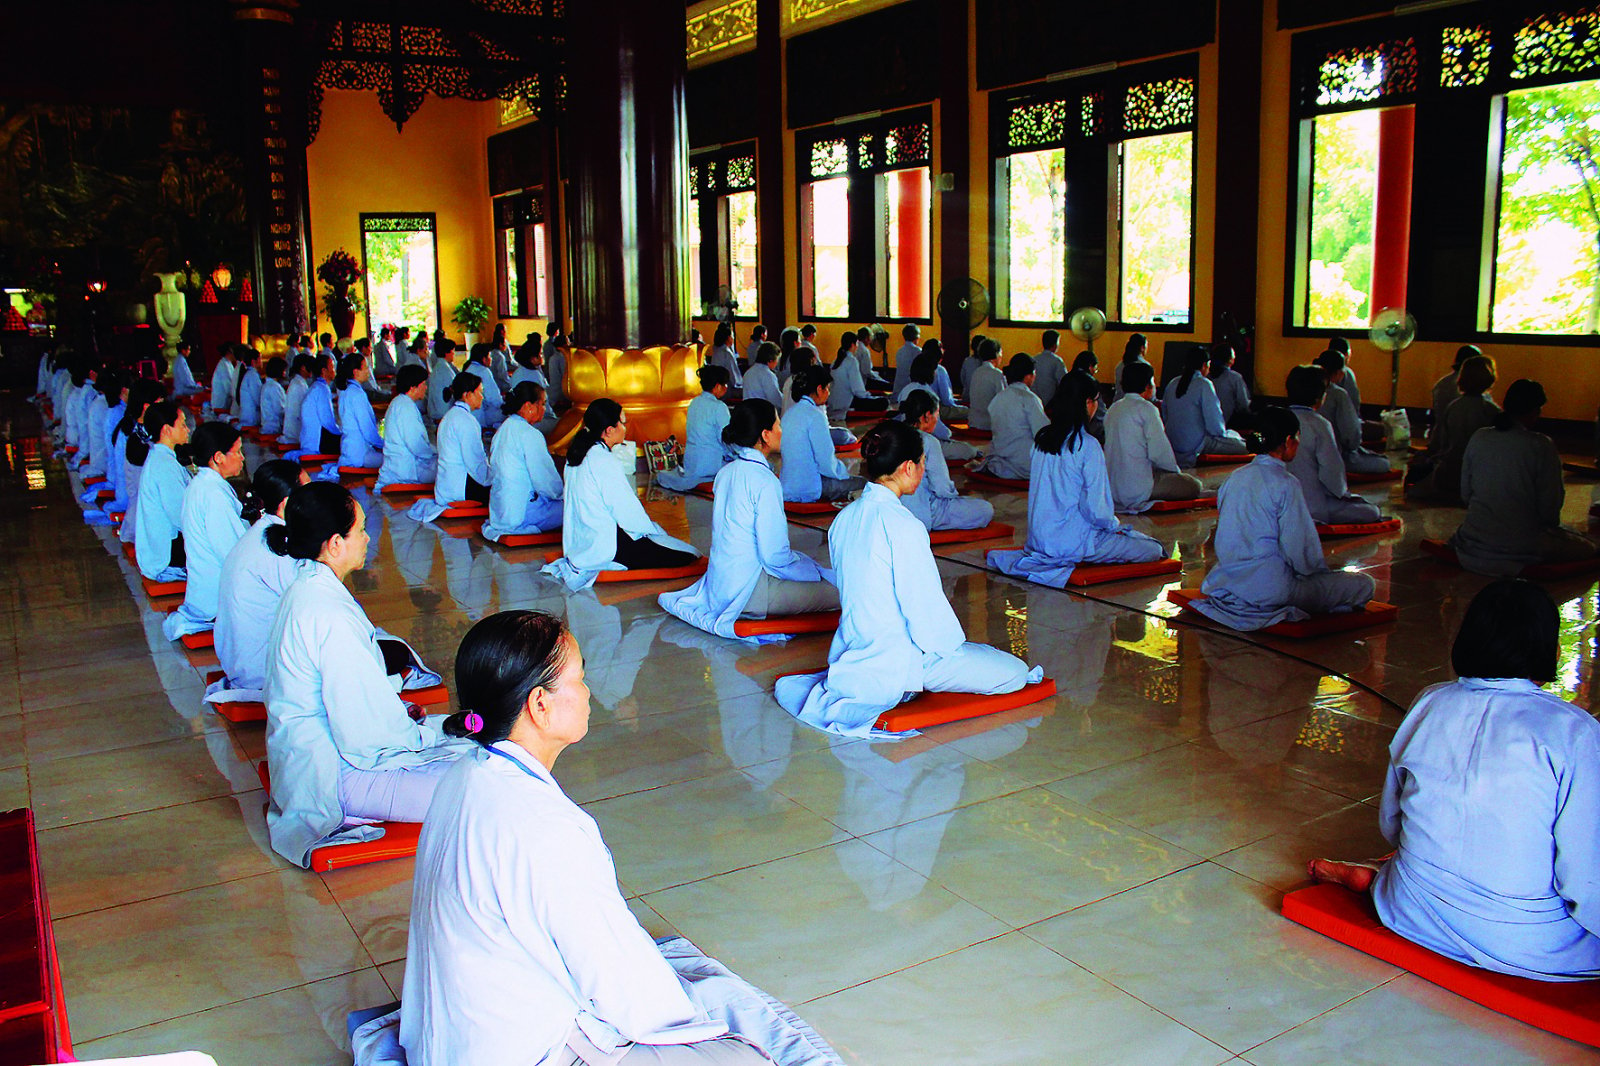 Giáo dục Phật học là nơi tầng lớp tu sĩ và cư sĩ phối hợp để tìm hiểu, nghiên cứu, mở mang kho tàng tri thức và thực hành giáo lý Phật đà.